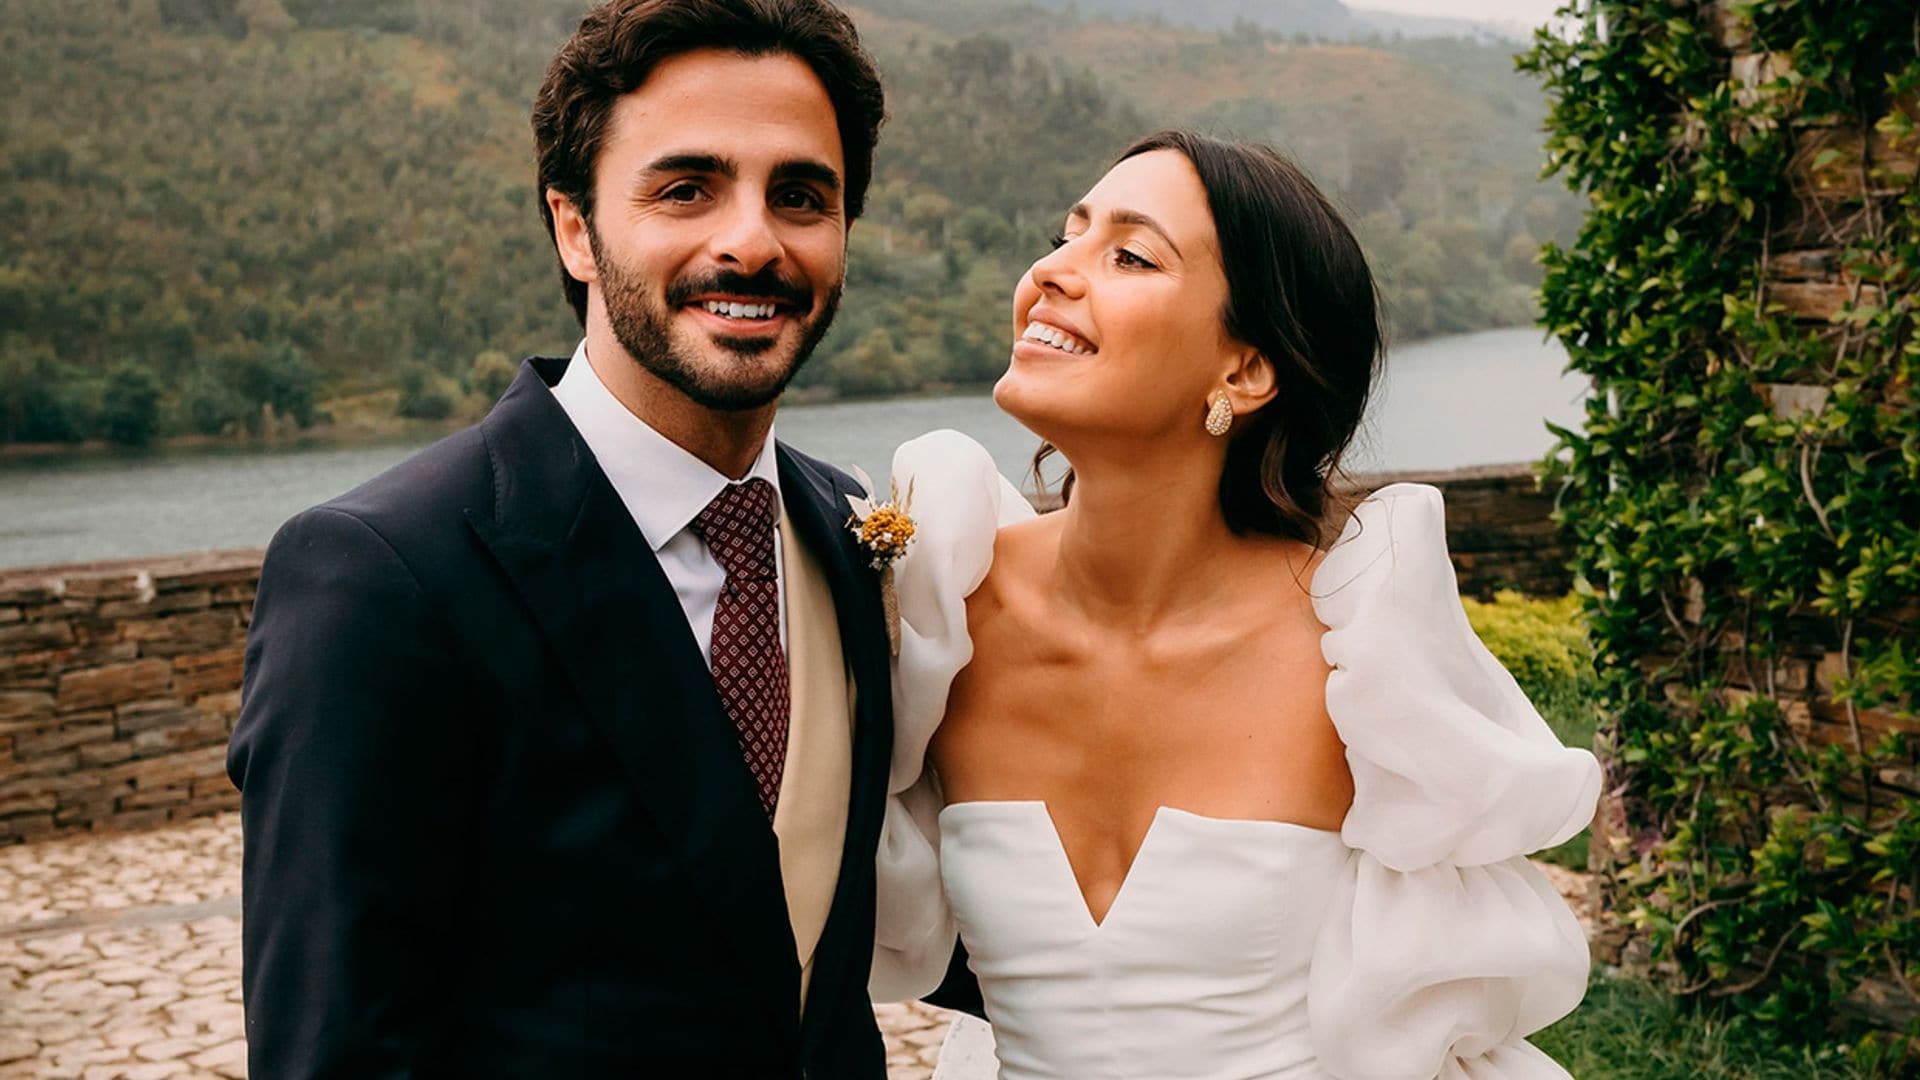 La boda de Anita da Costa, la 'influencer' portuguesa que convirtió su vestido en fenómeno viral